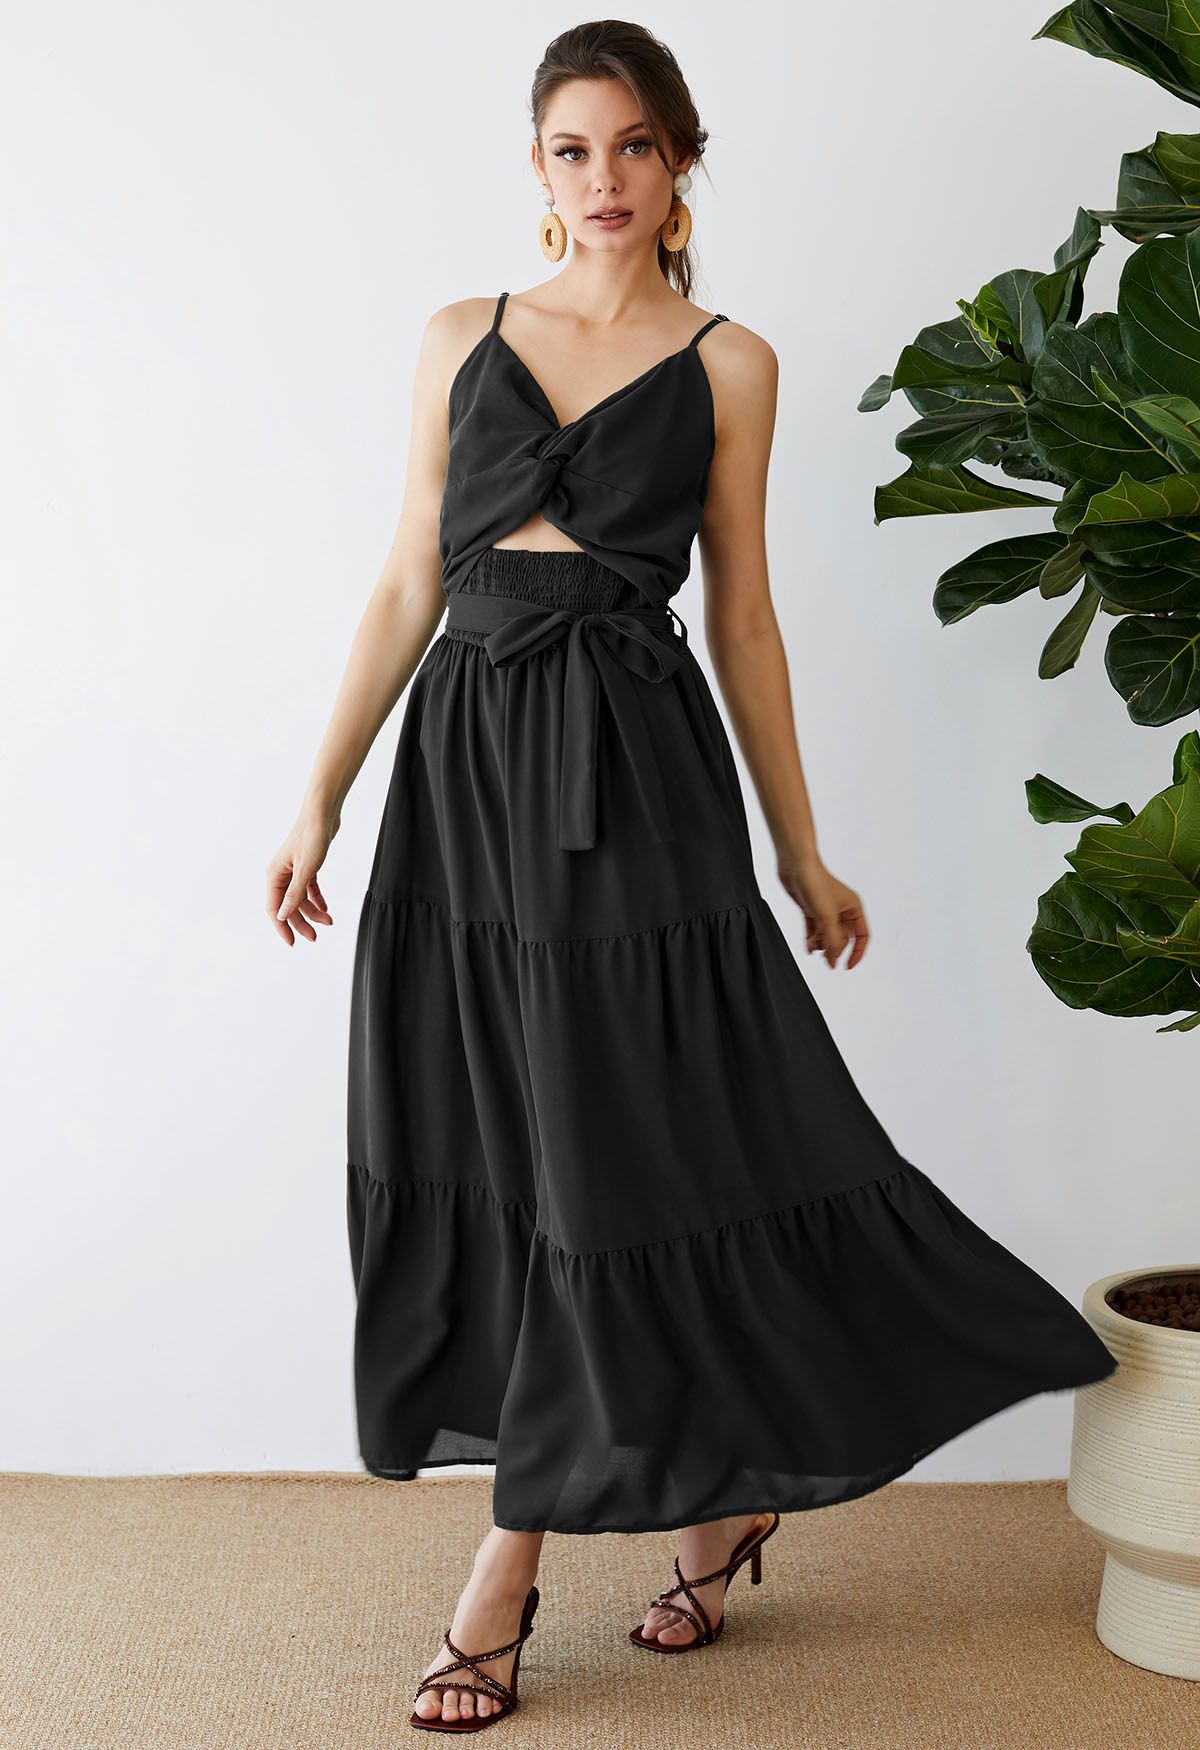 فستان قصير بتصميم ملفوف من الكامي مزركش باللون الأسود